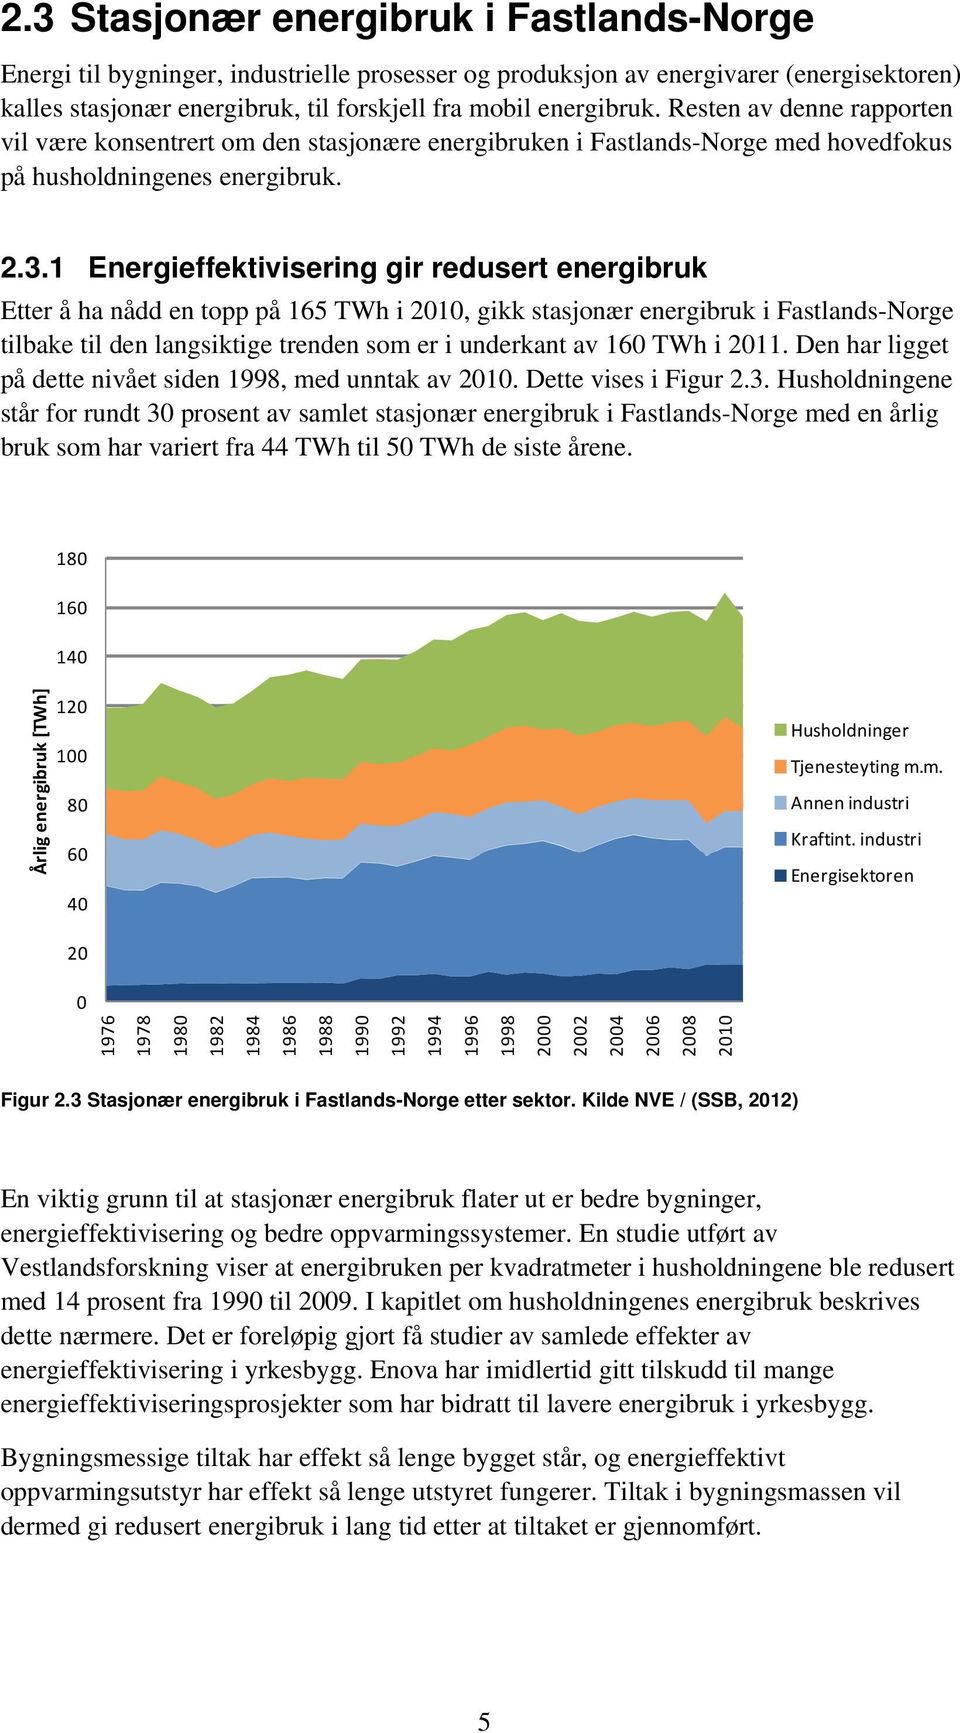 1 Energieffektivisering gir redusert energibruk Etter å ha nådd en topp på 165 TWh i 2010, gikk stasjonær energibruk i Fastlands-Norge tilbake til den langsiktige trenden som er i underkant av 160